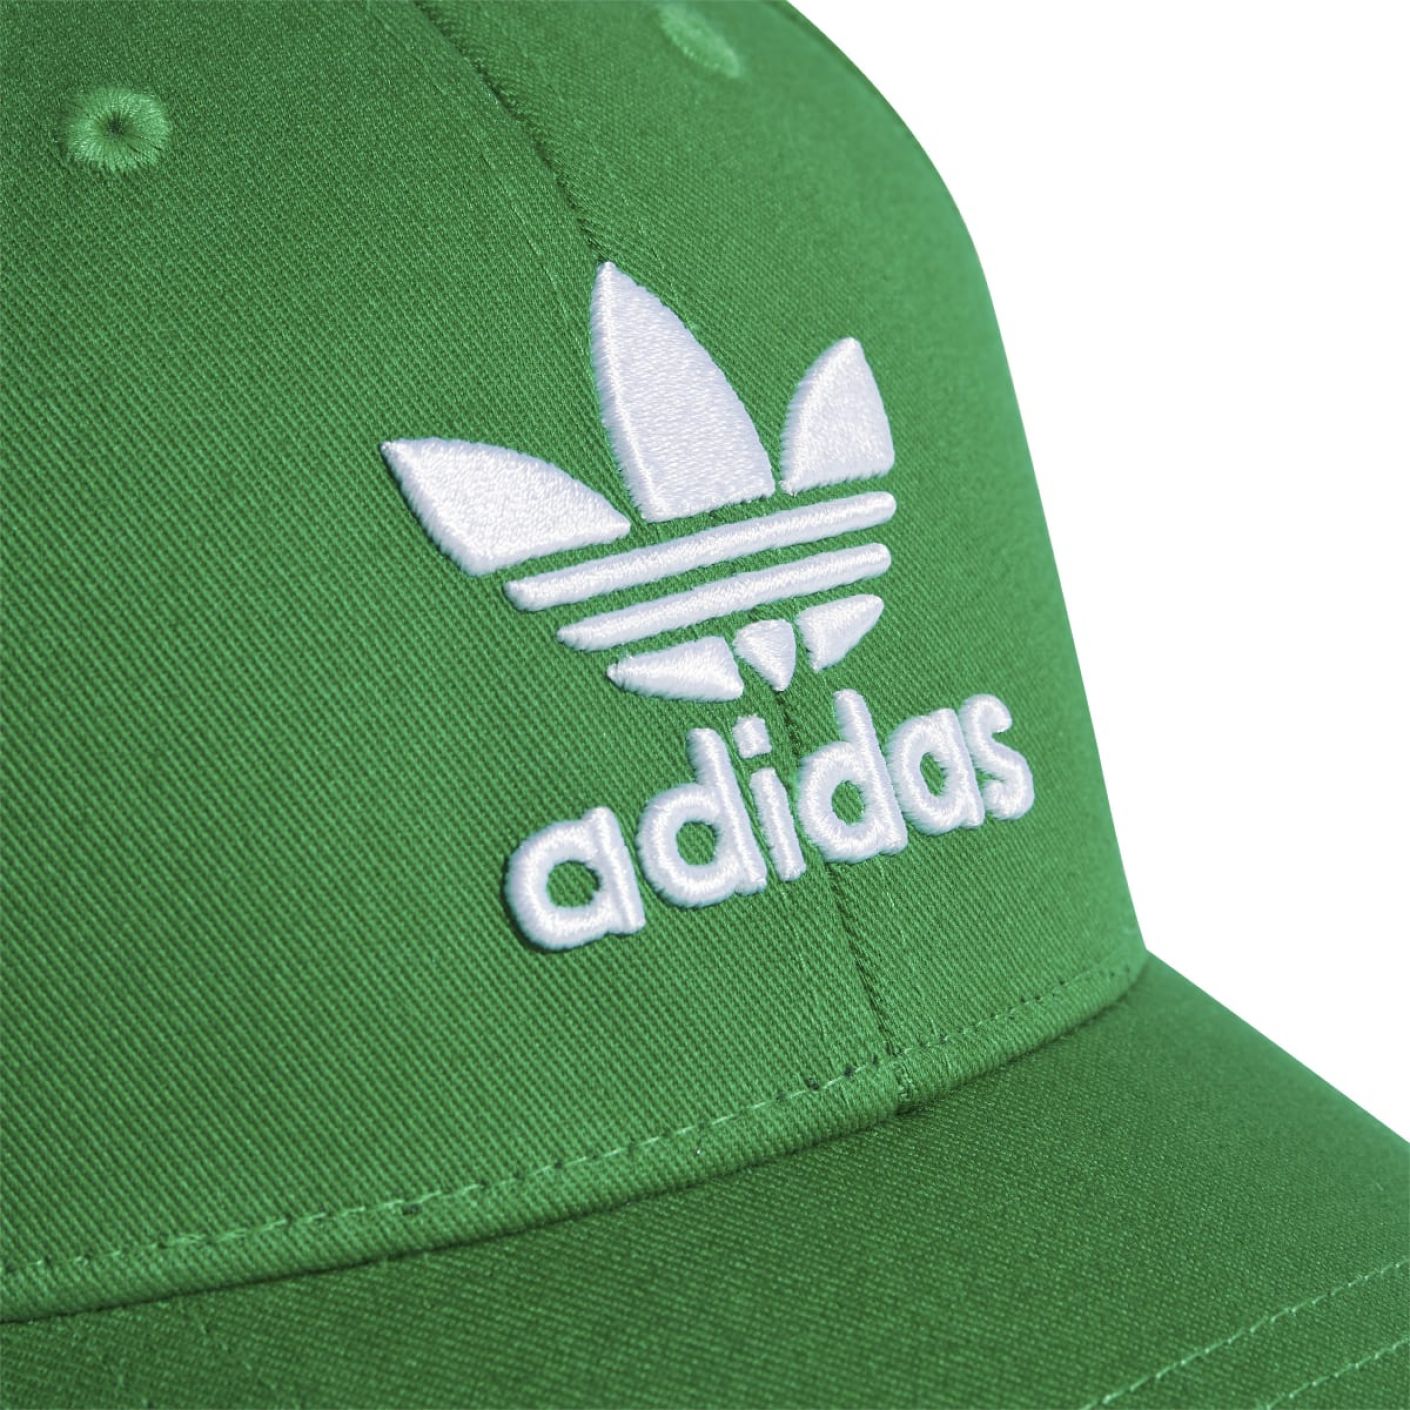 Adidas Cappellino Trefoil Baseball Verde